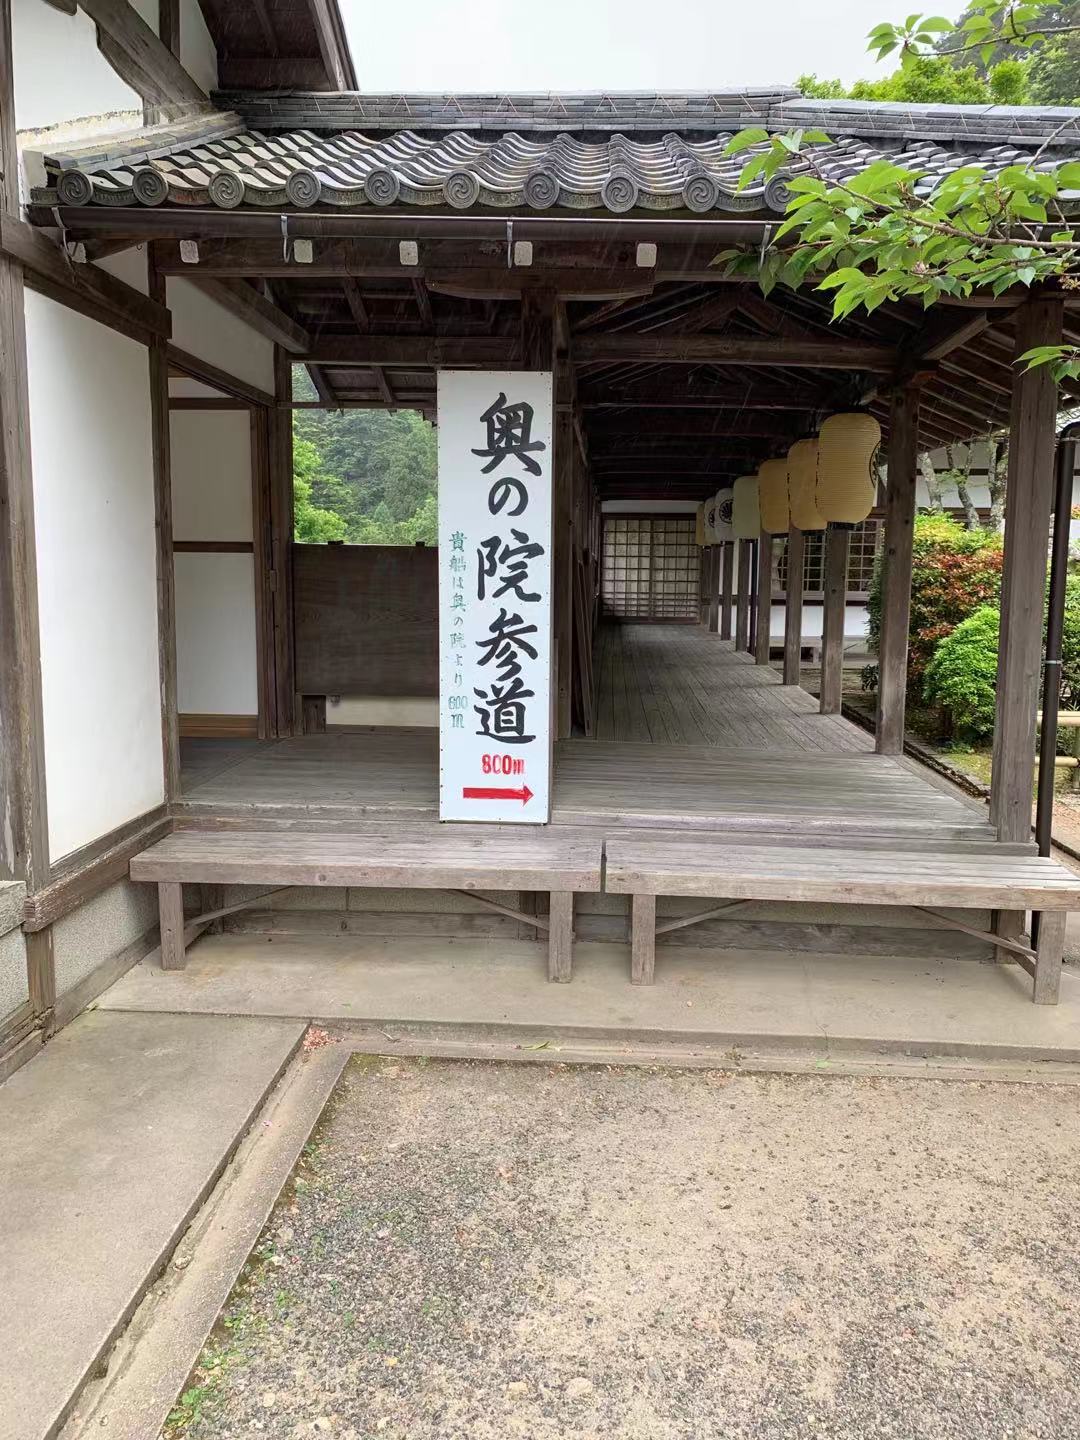 京都的贵船神社到鞍马寺的步行道现在能走吗 穷游问答